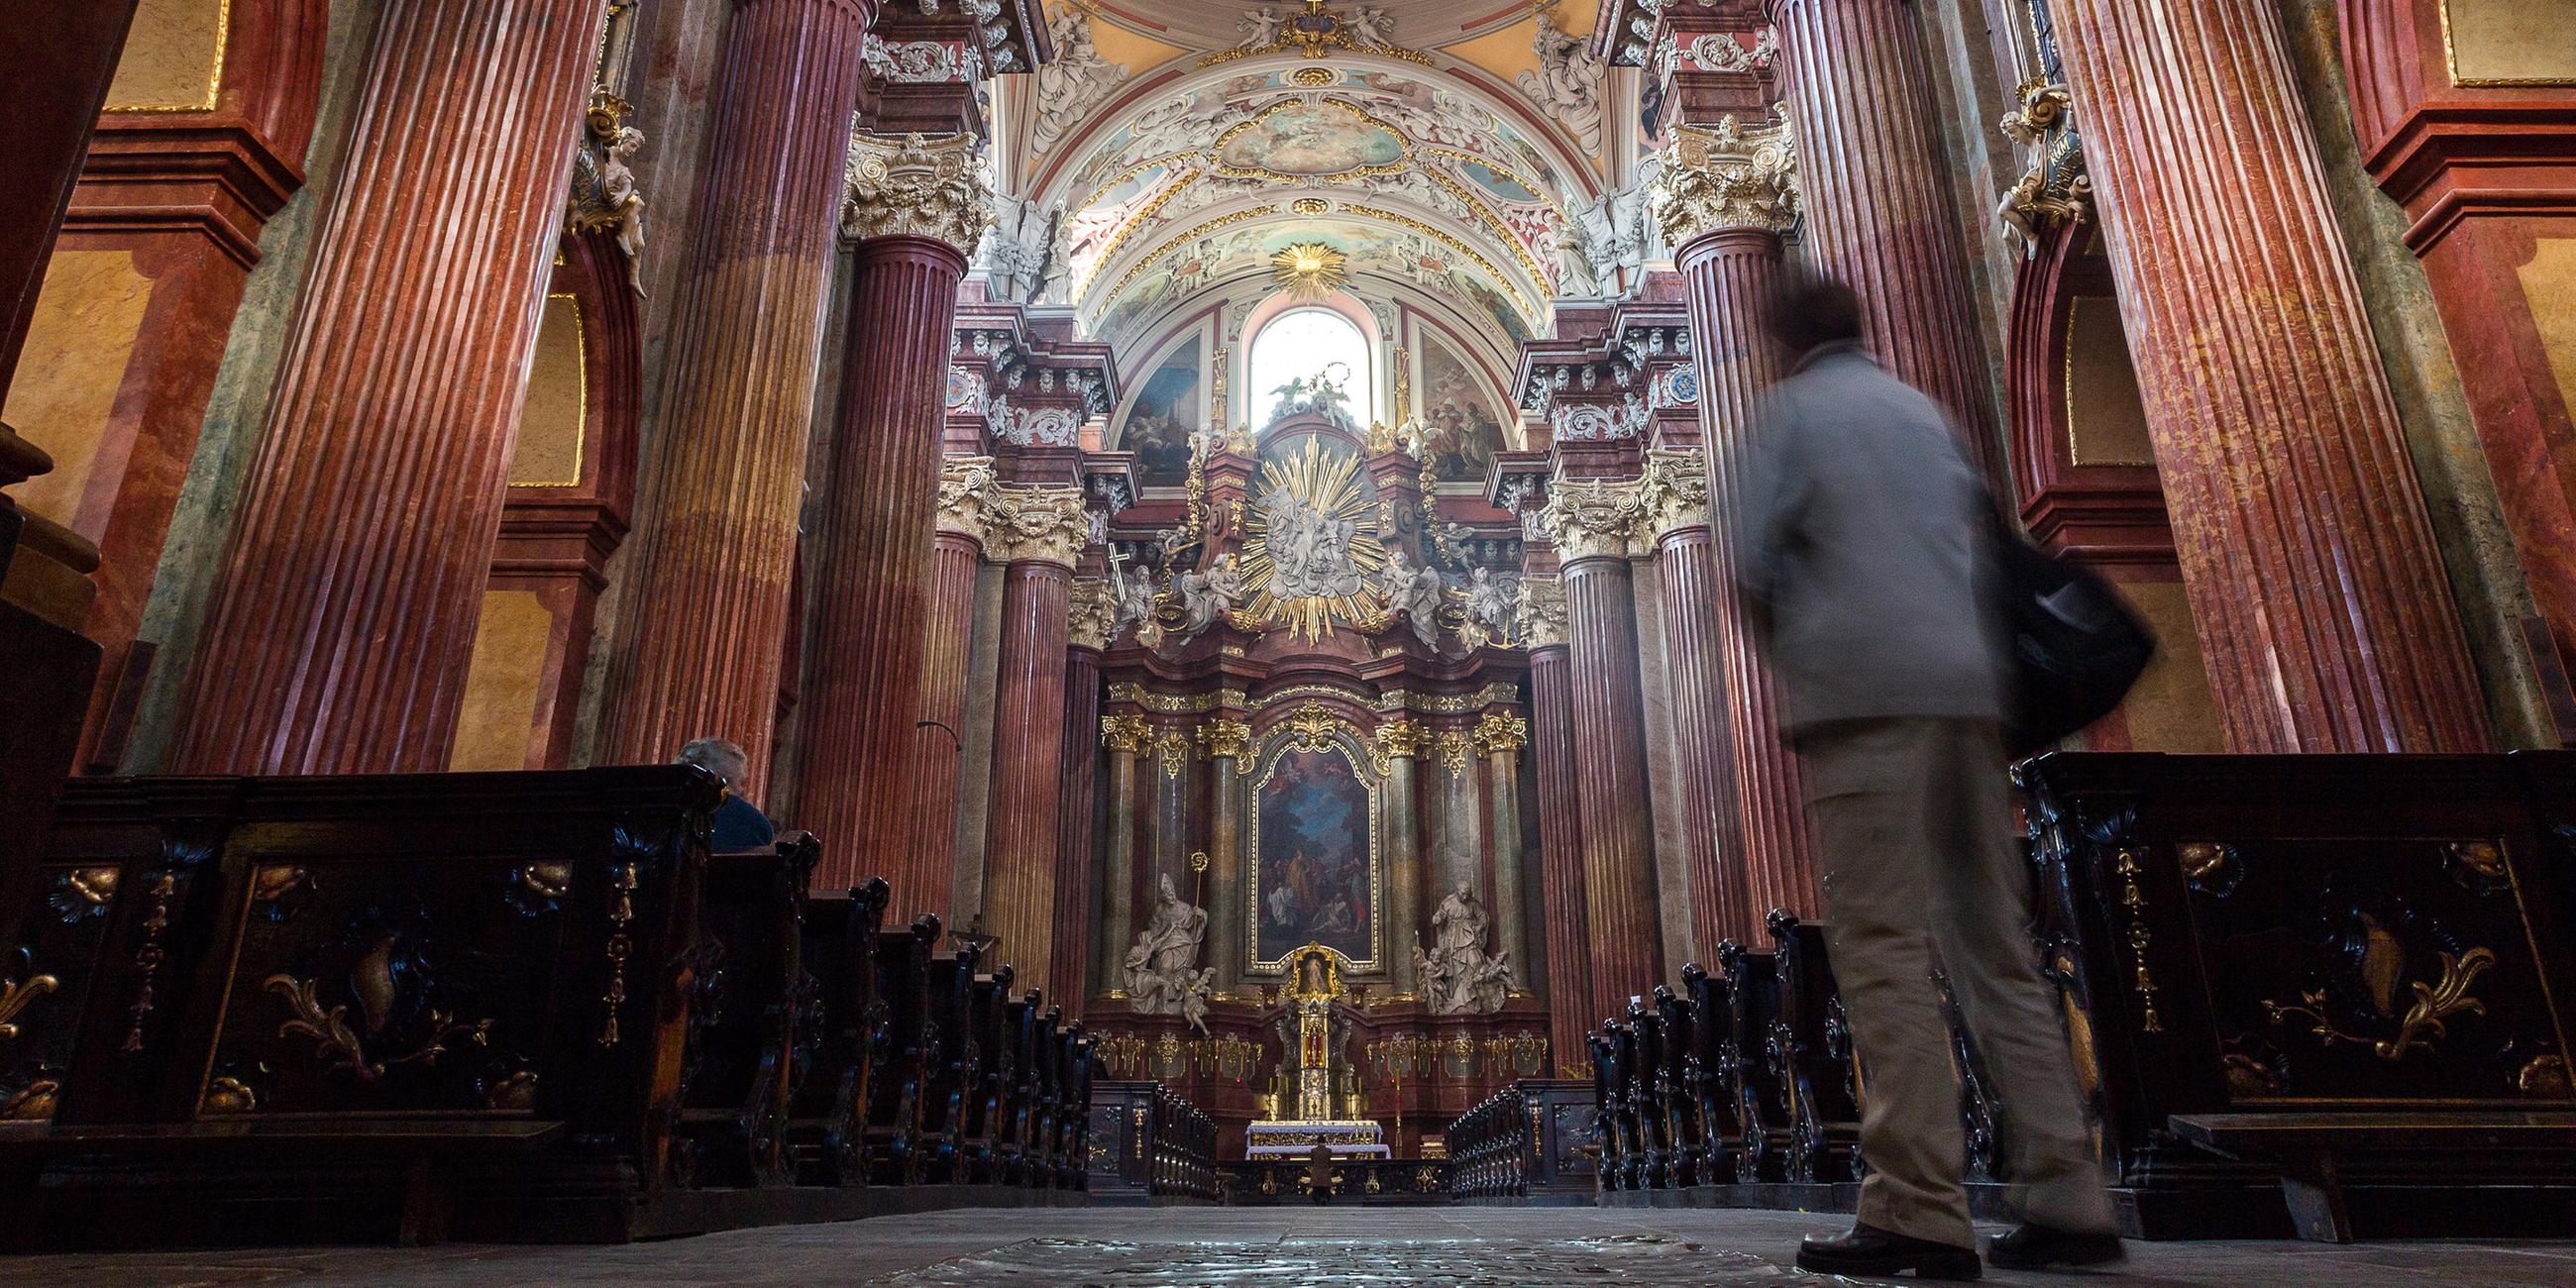 Die Pfarrkirche Posen in Polen im barocken Stil von innen